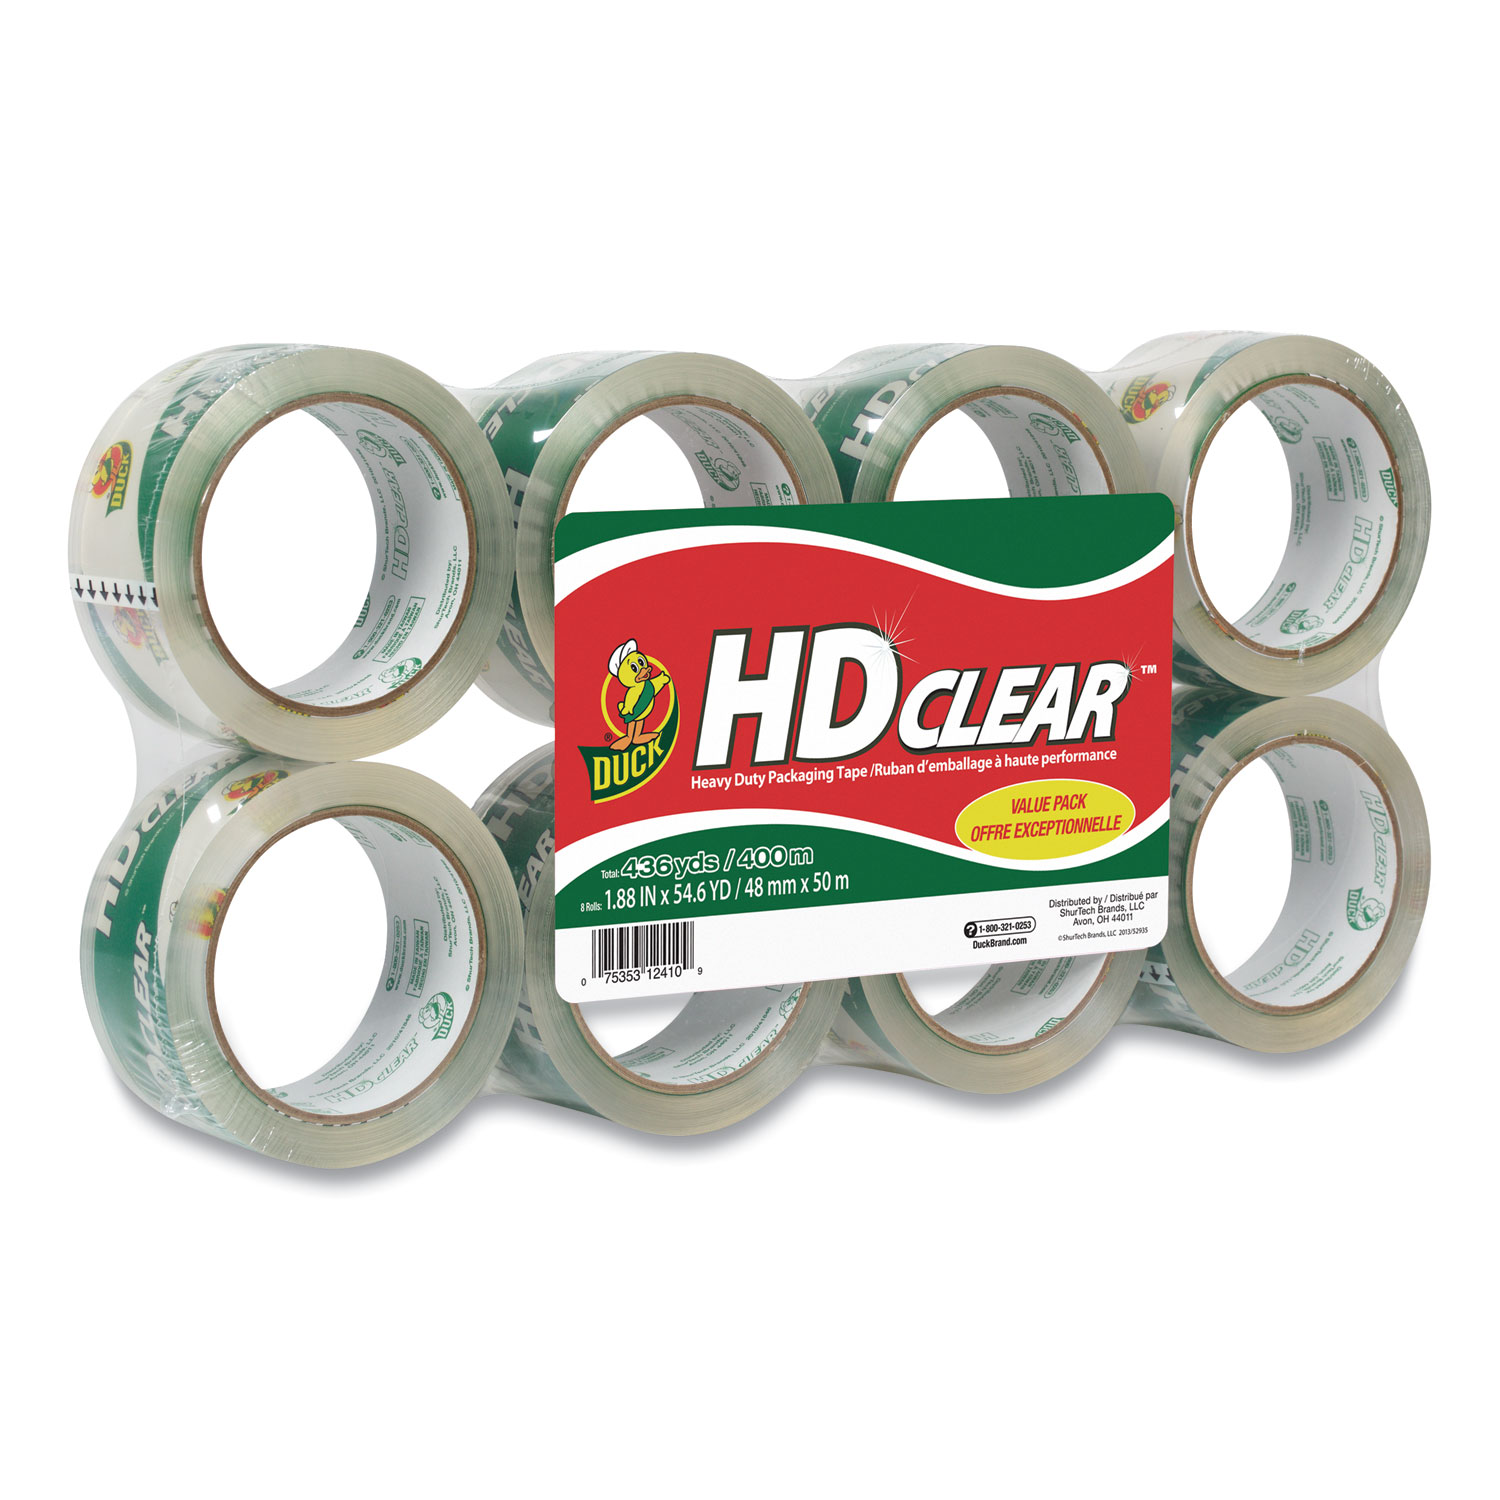 Duck HD Clear Heavy Duty Packaging Tape, 1.88 inch x 109 yds